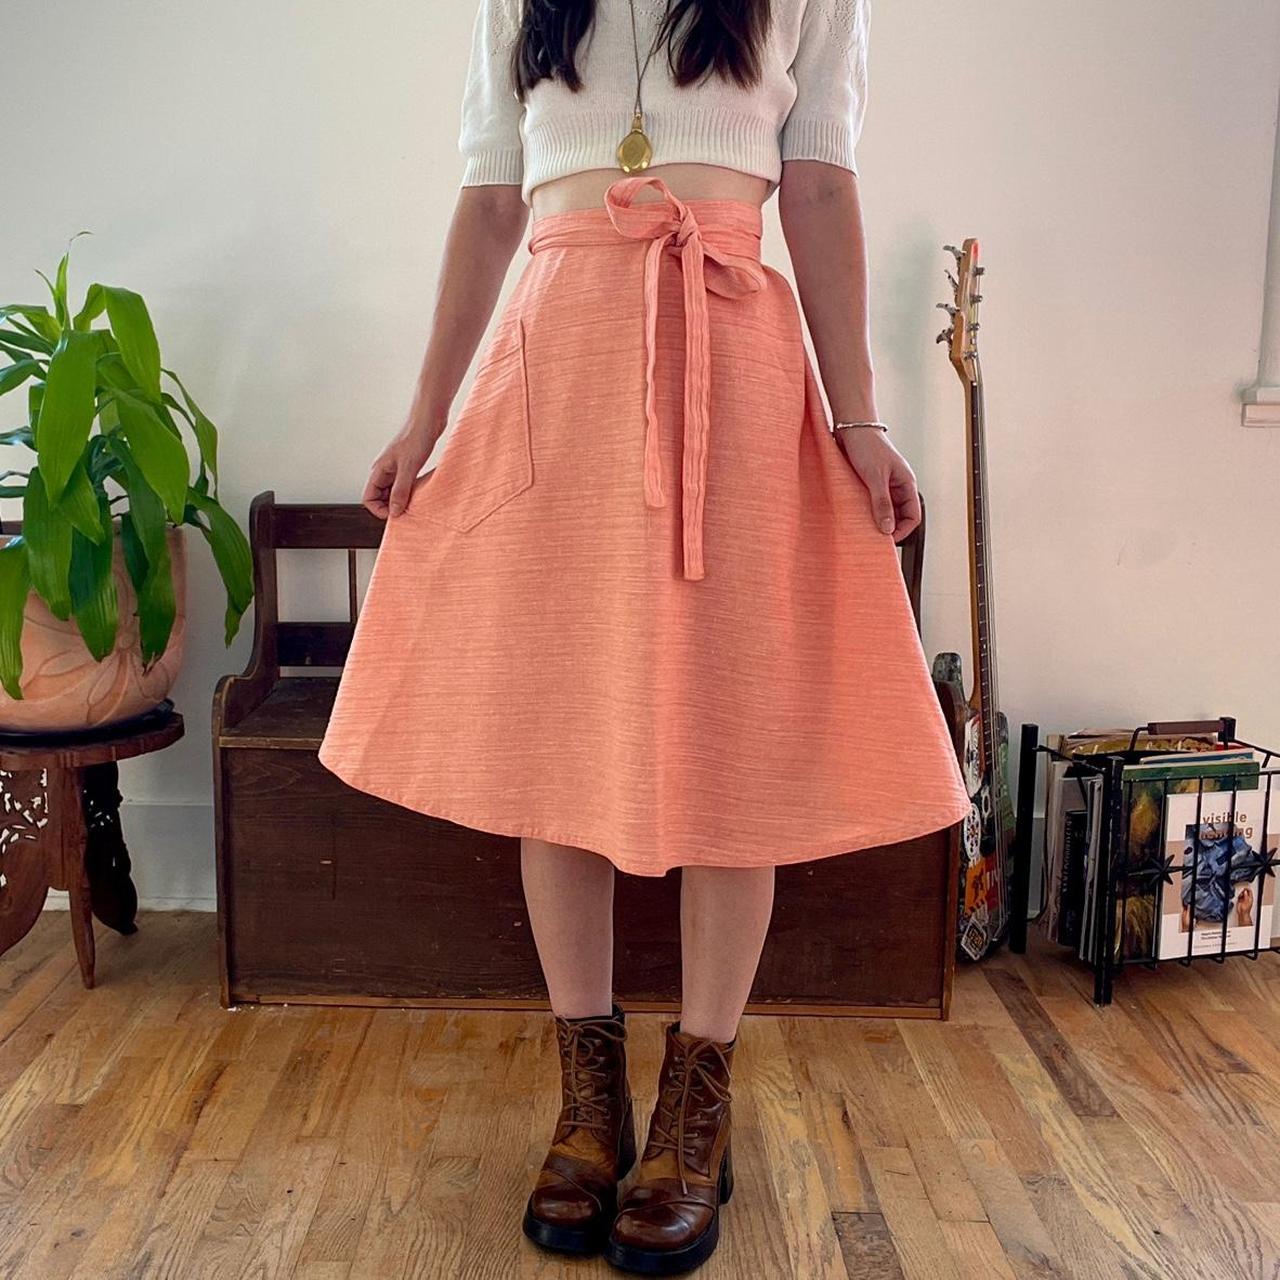 Vintage 70's Coral wrap Skirt Size S/M. Cotton... - Depop